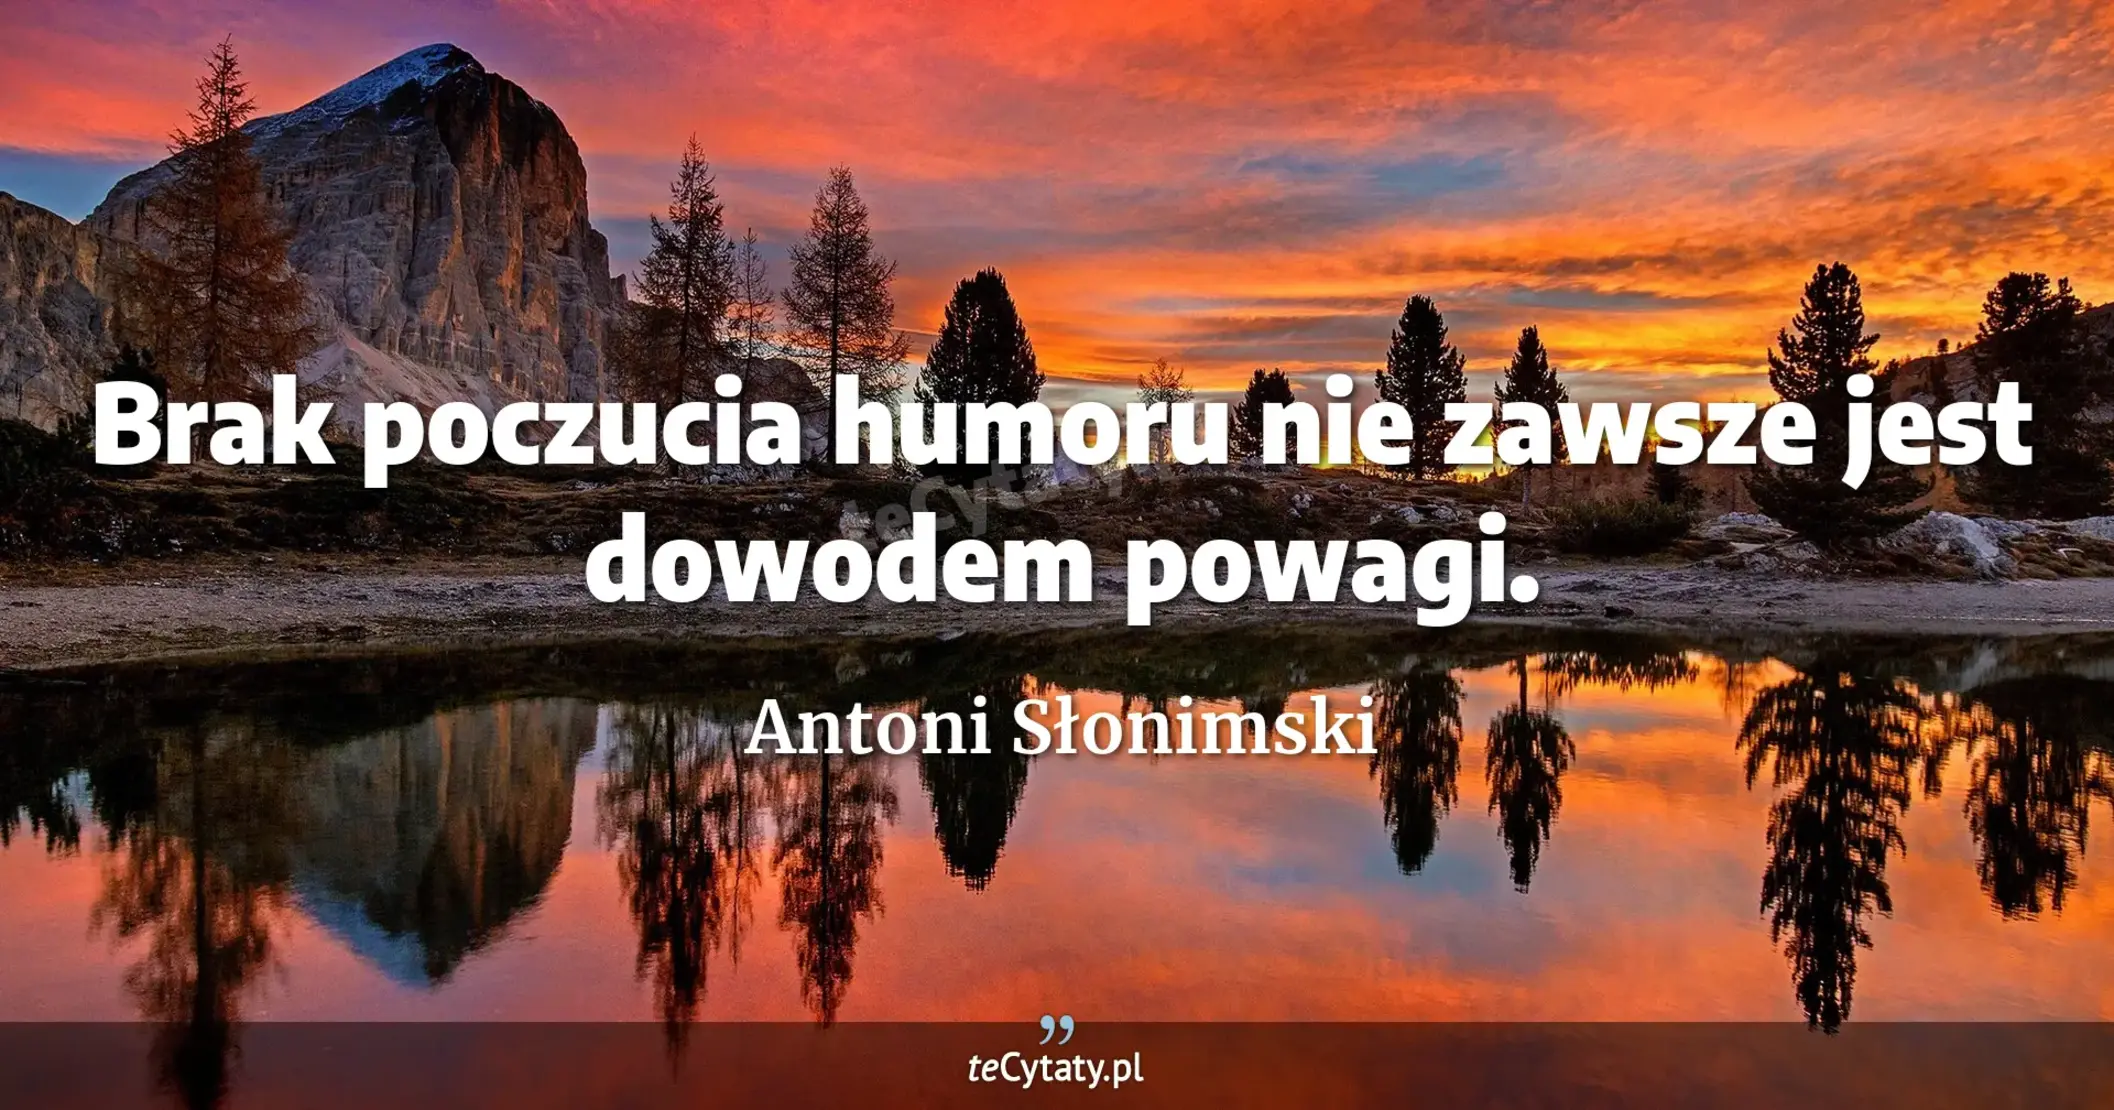 Brak poczucia humoru nie zawsze jest dowodem powagi. - Antoni Słonimski